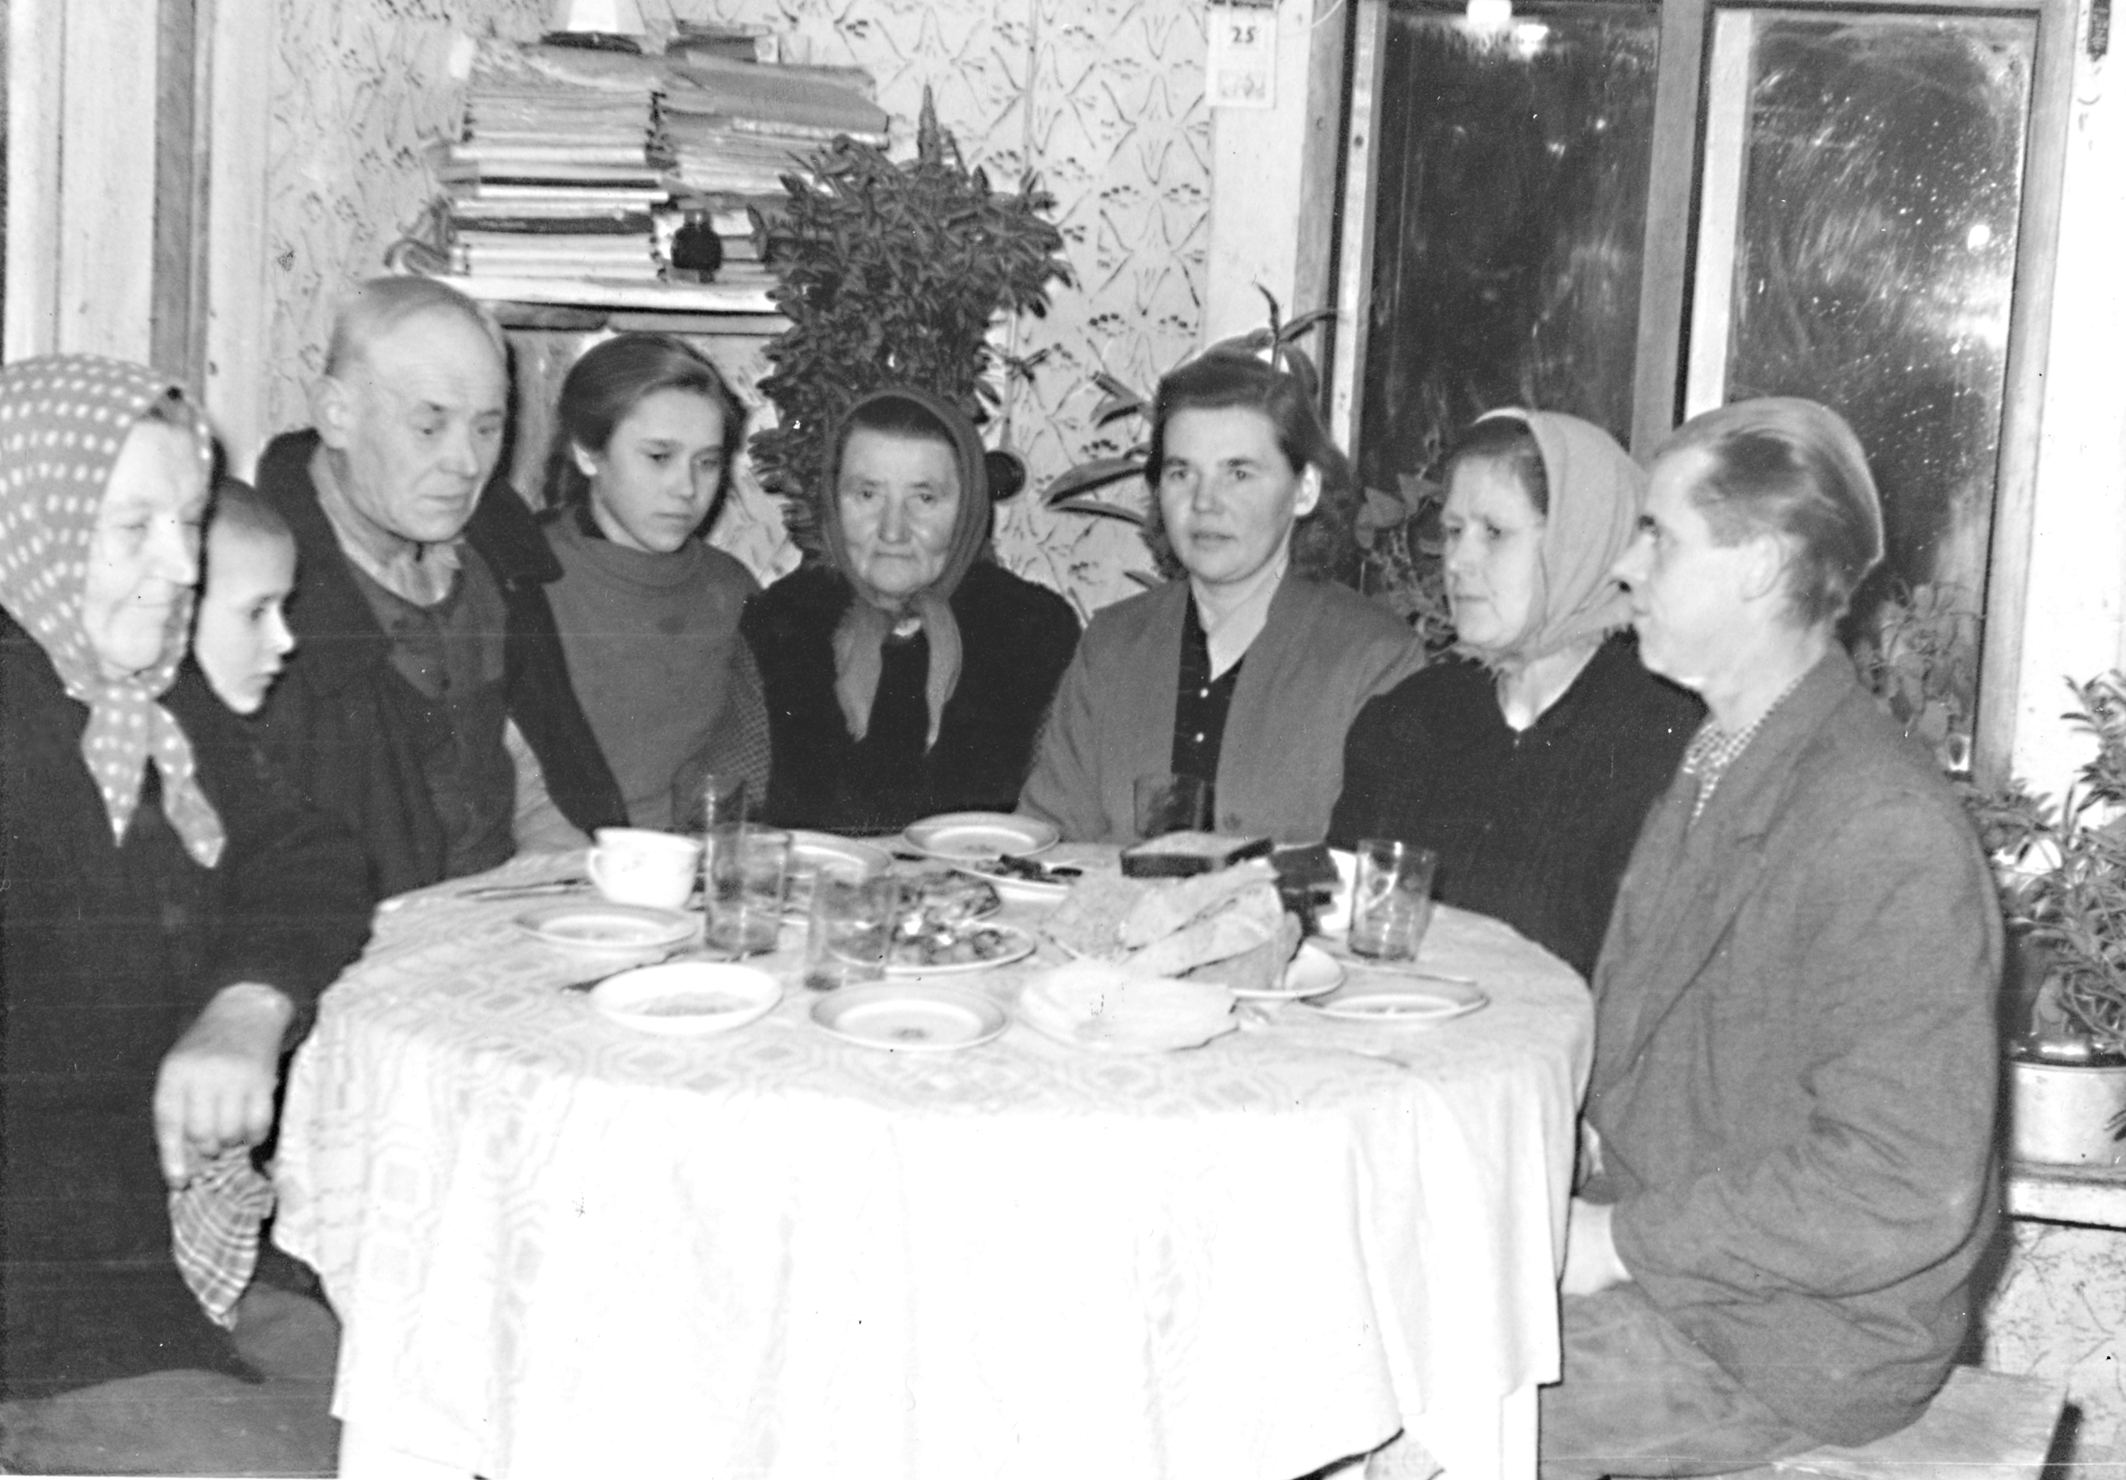 Kadrënai, 1962 m. gruodþio 24 d.